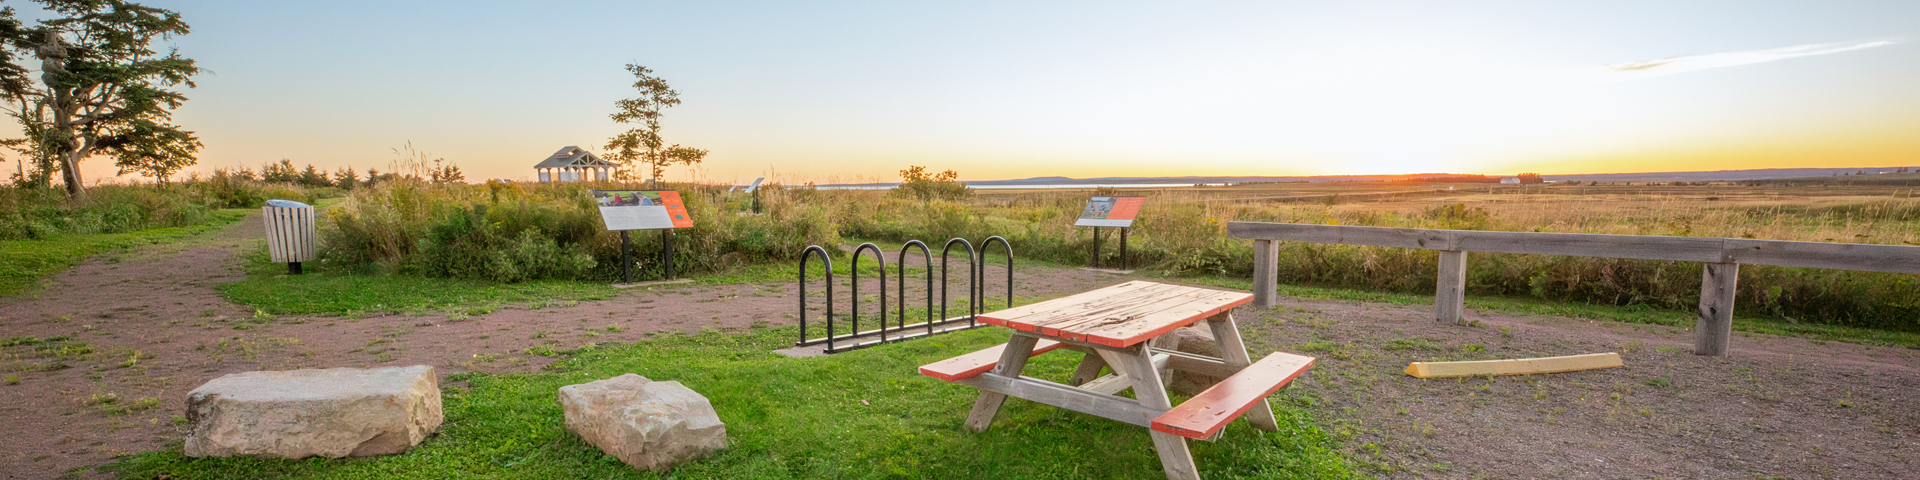 Une table de pique-nique, des sentiers et un parc d'observation dans un grand environnement.